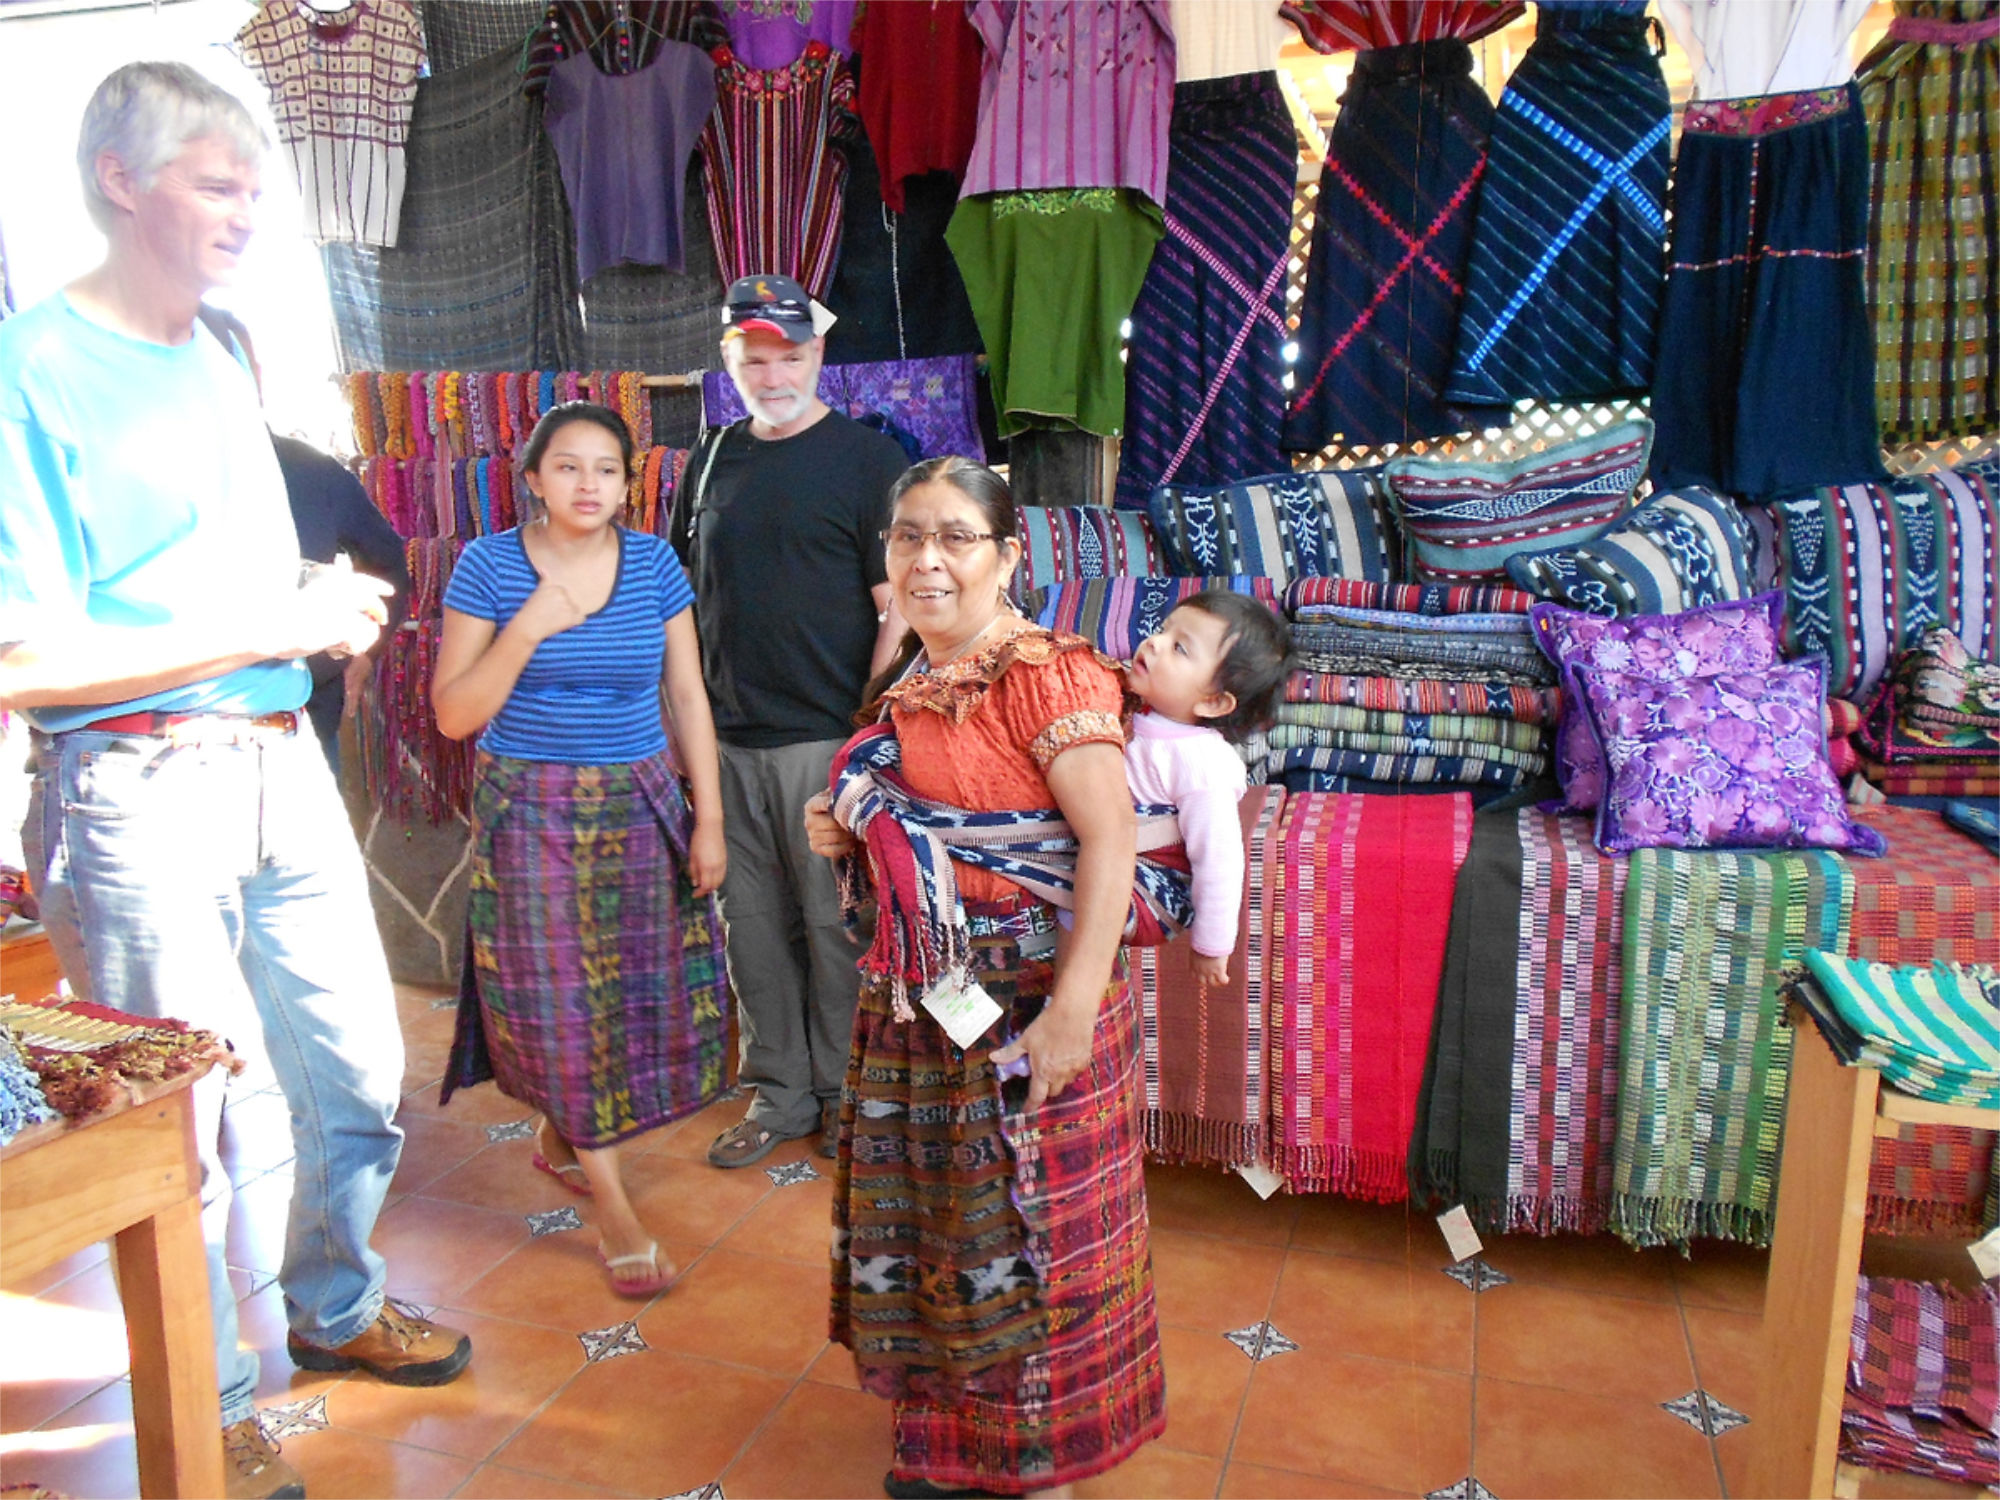 Groupe de personnes tenant un stand de textiles à un marché